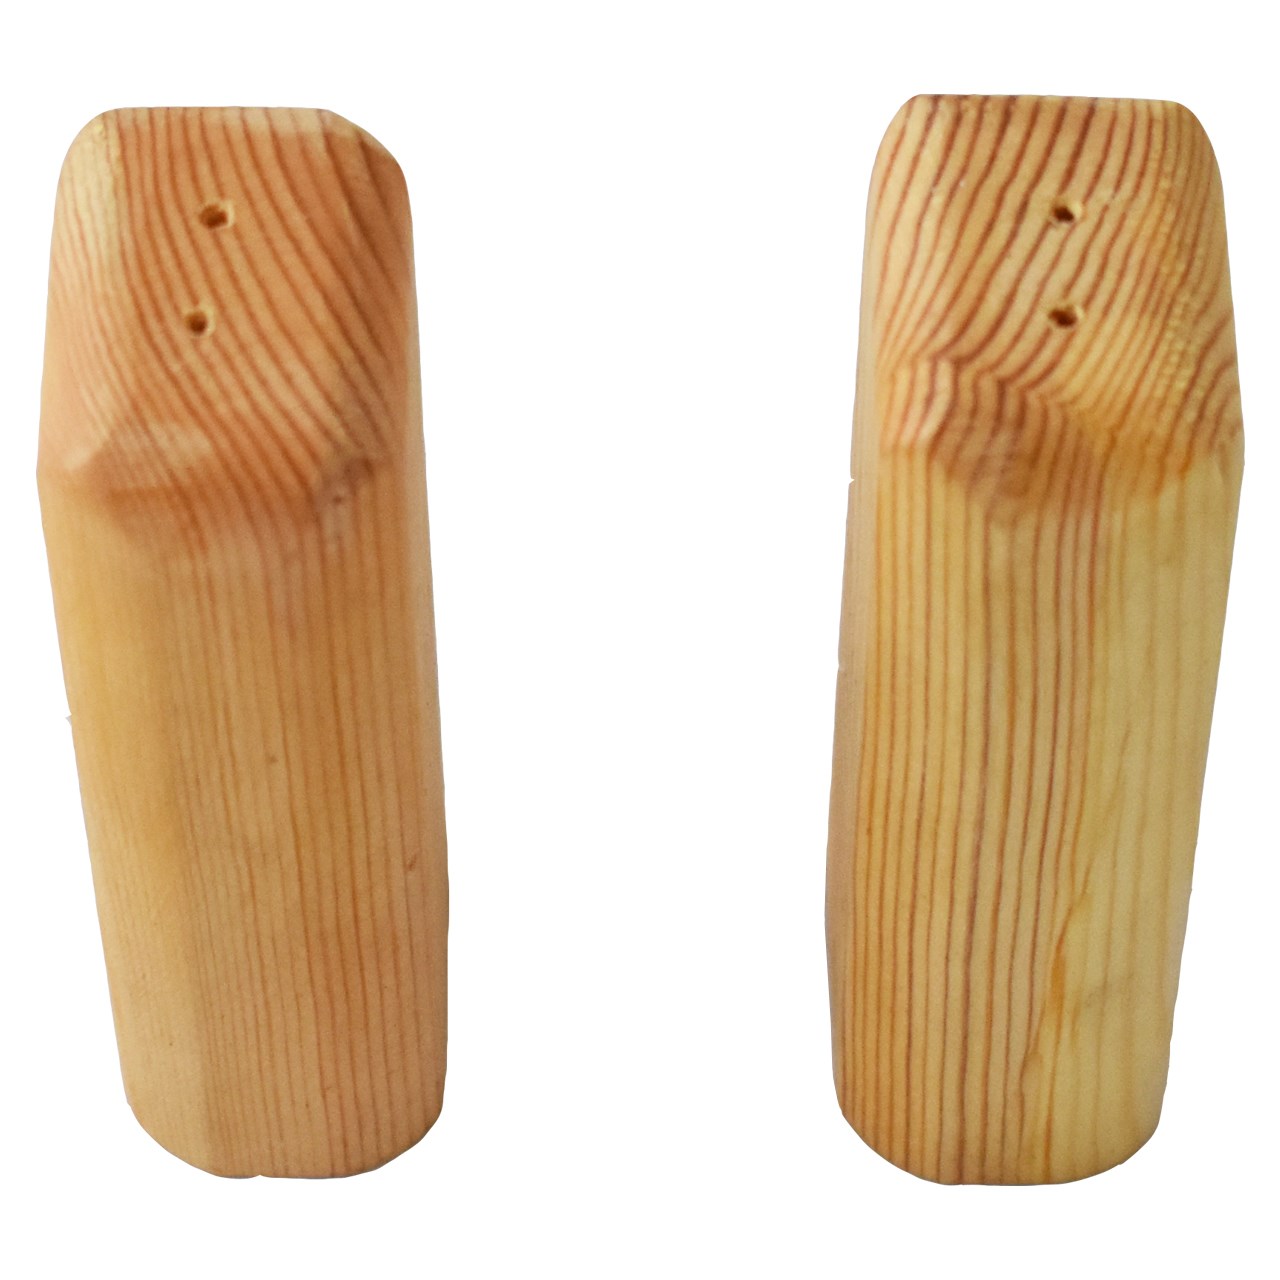 نمکدان نقطه مدل Wood - بسته 2 عددی